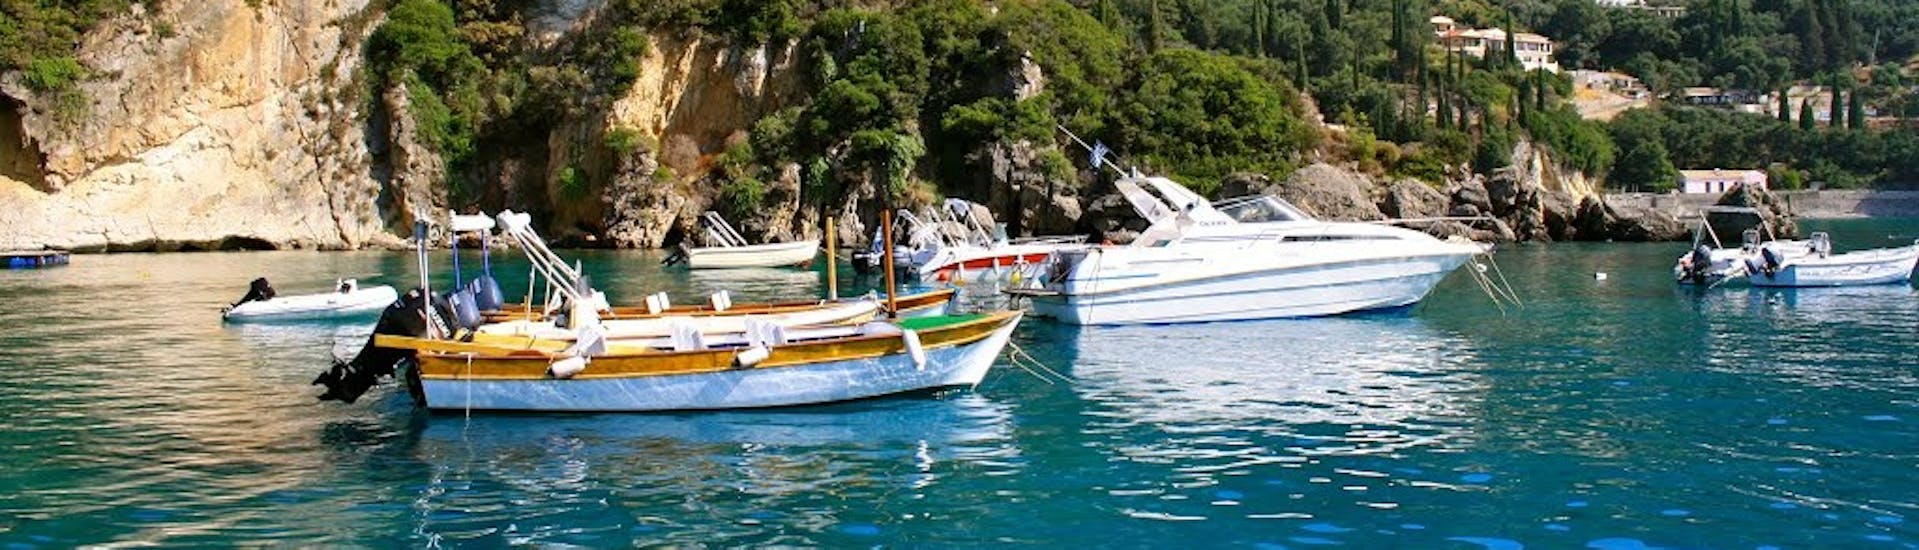 Menschen auf einem Boot vom Bootsverleih in Palaiokastritsa auf Korfu (bis zu 4 Personen) Ski Club 105 Boat Rental Corfu.